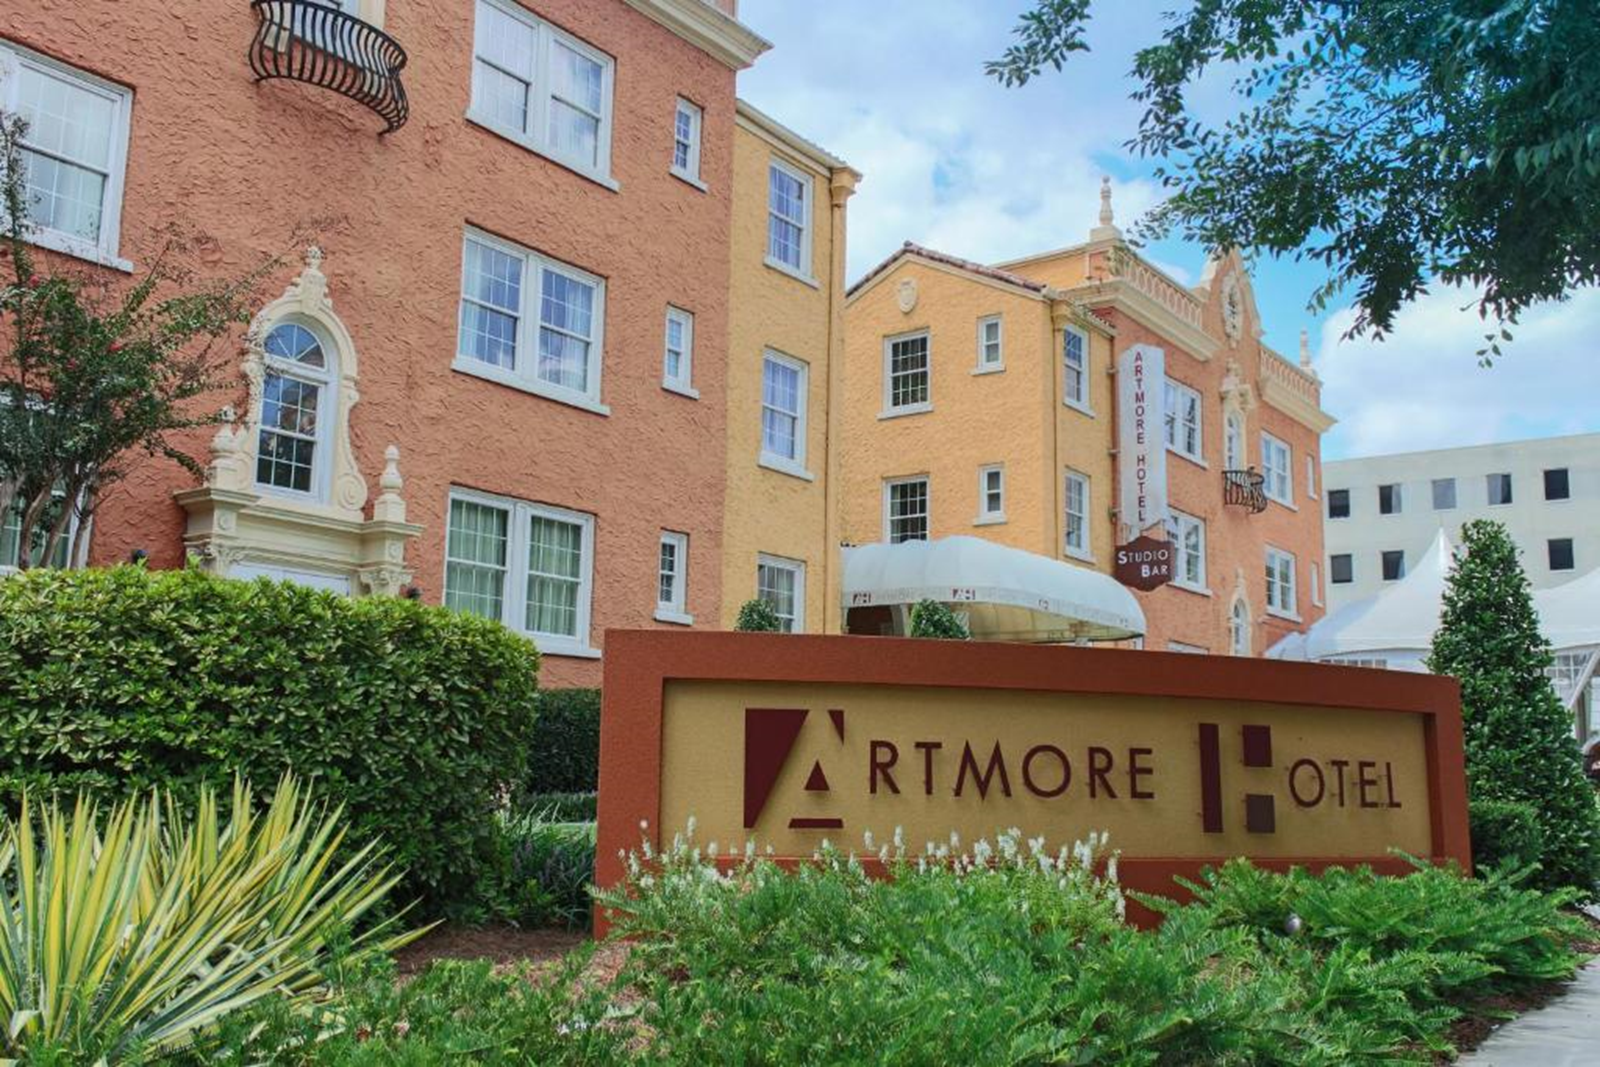 Artmore-Hotel